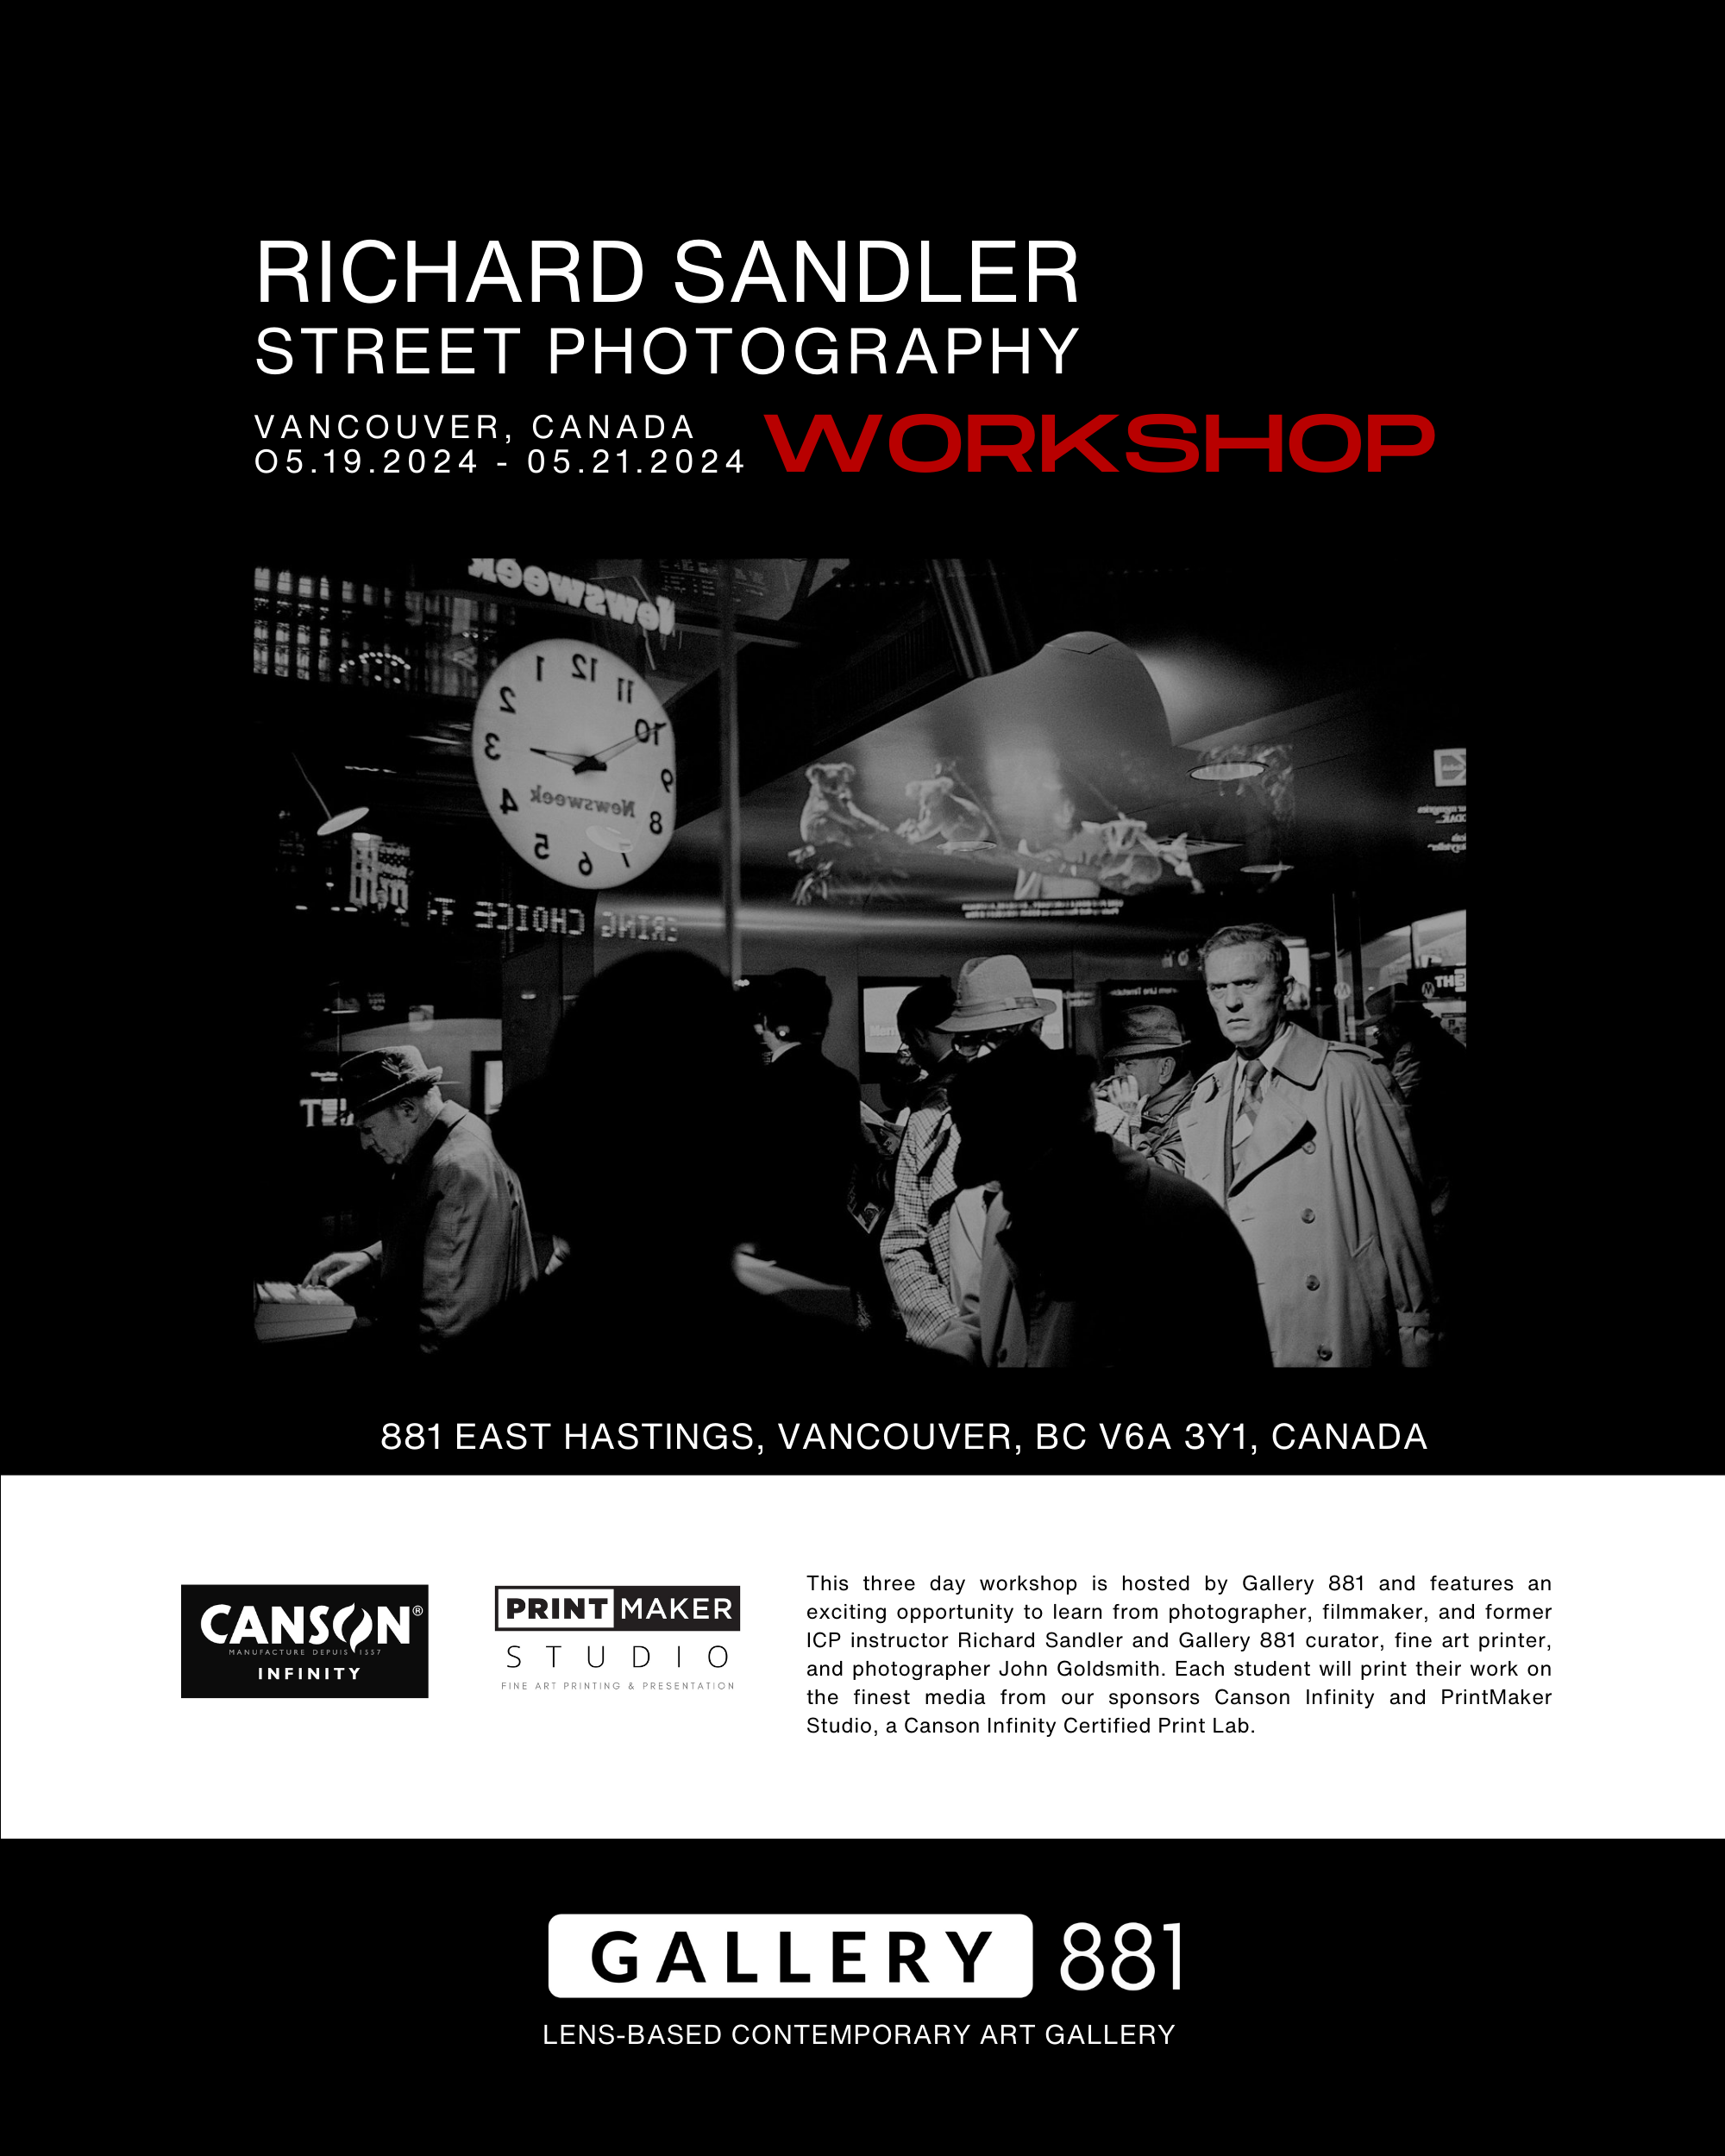 Gallery-881-Richard-Sandler-Workshop-7.png